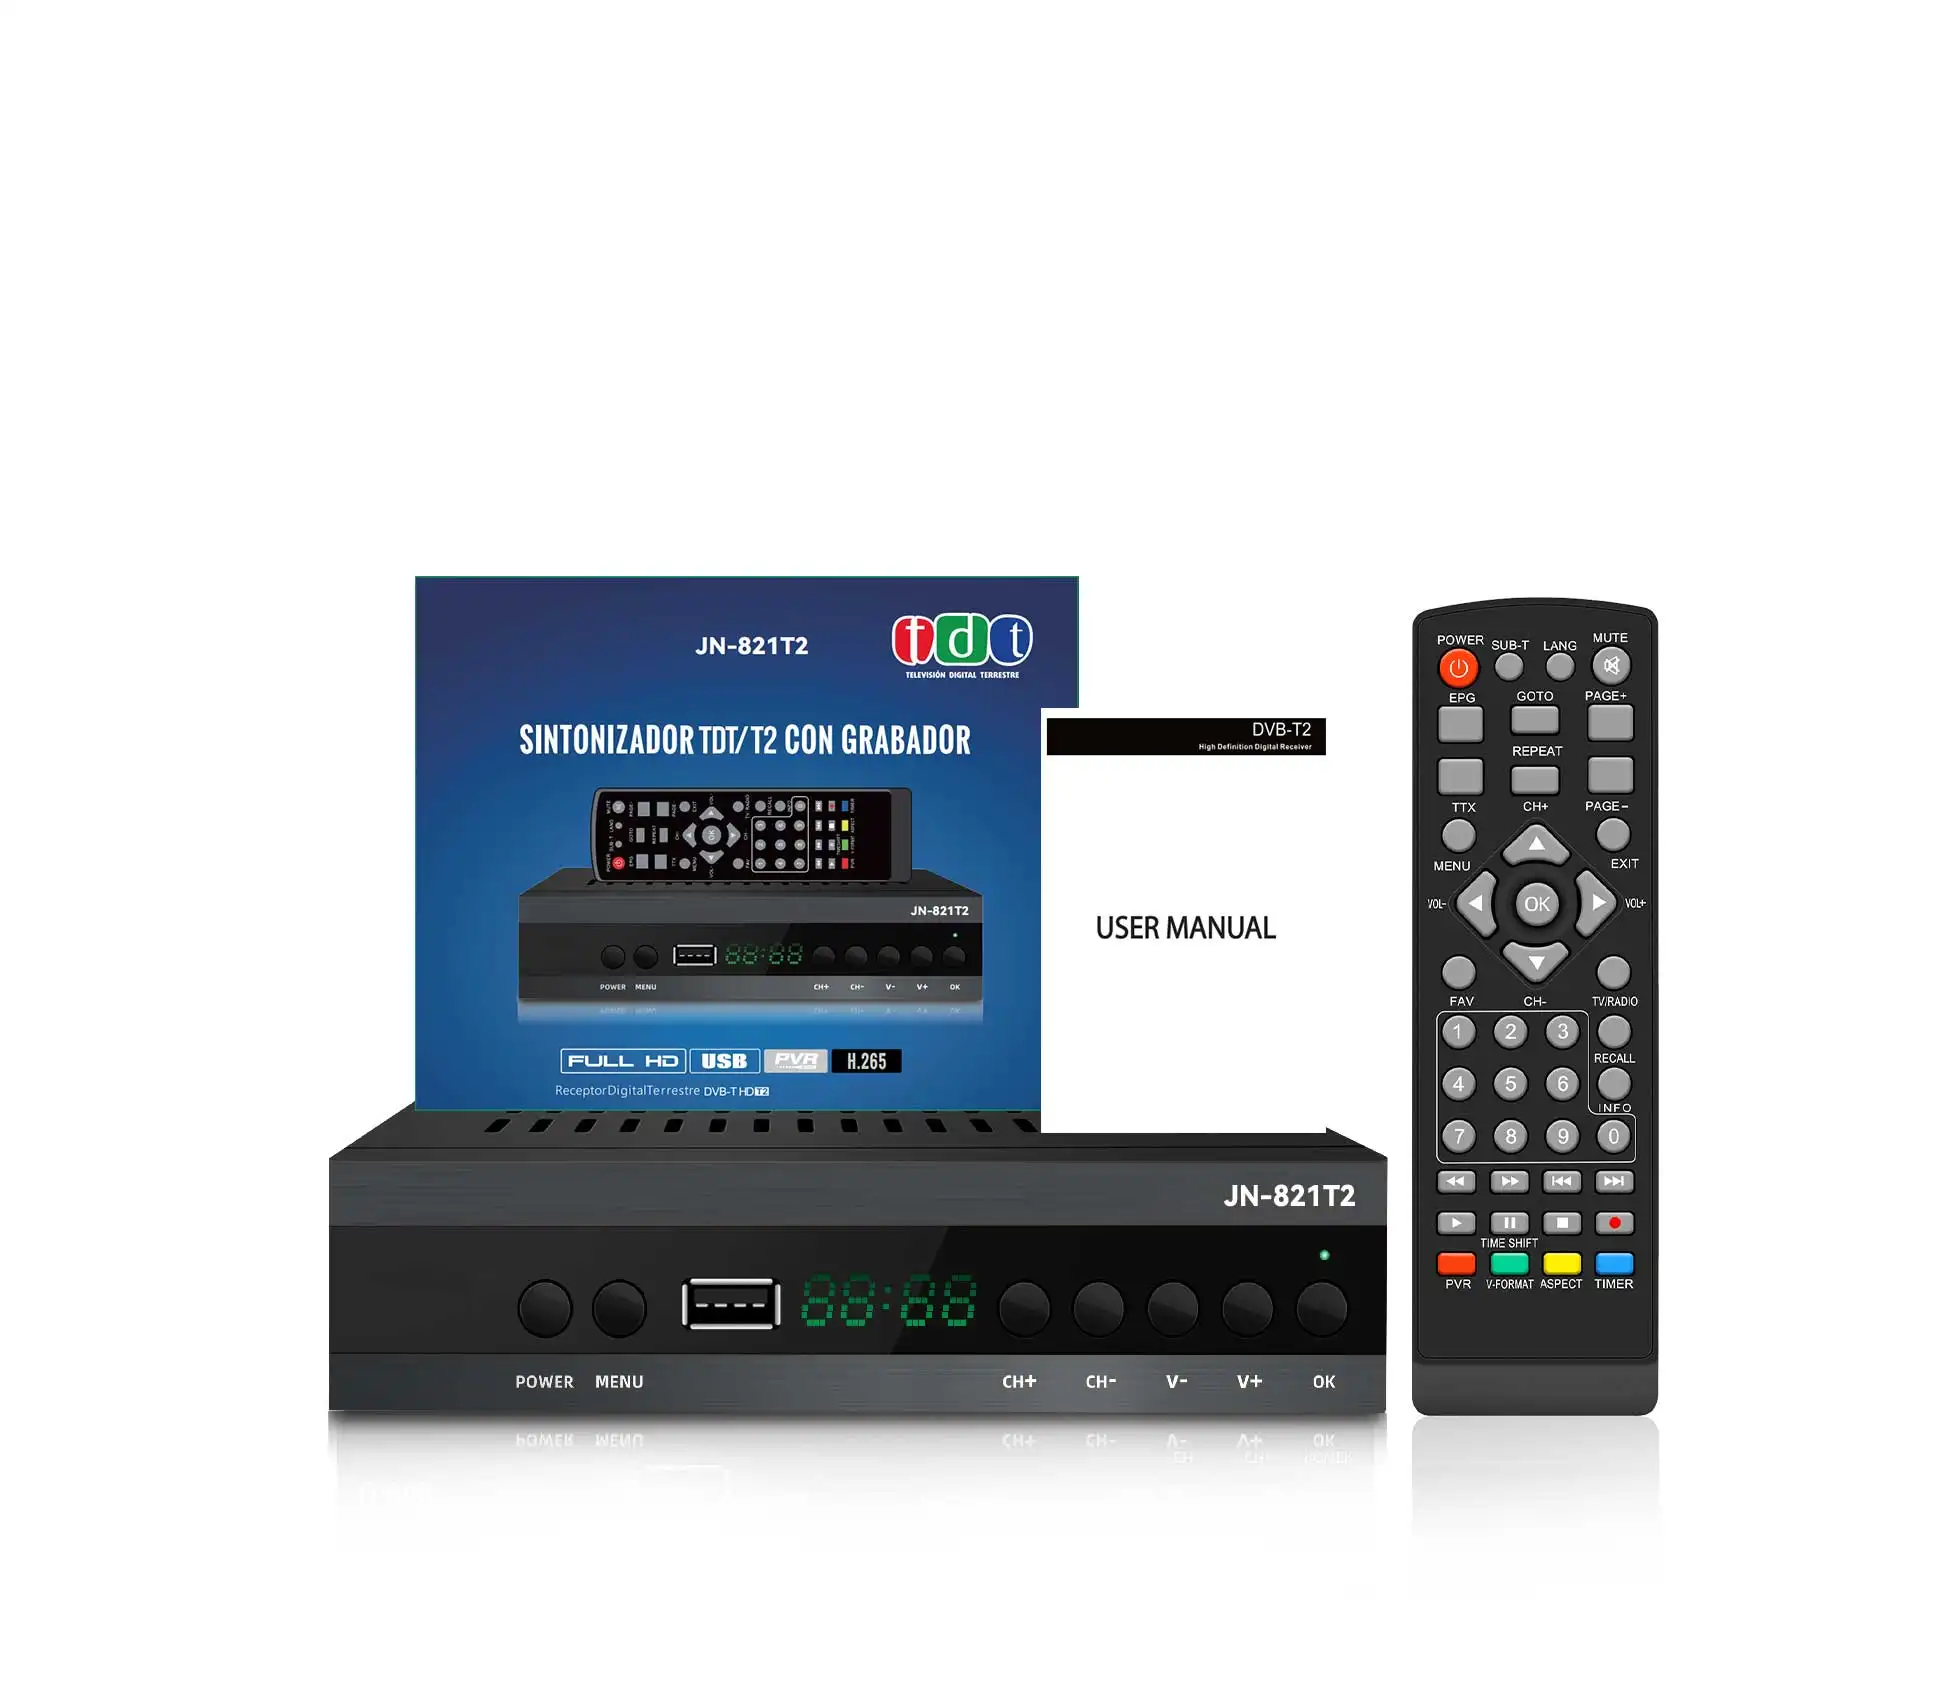 フルHD DVB-T2 1080Pはスペイン語DTTデコーダー用のdd + AC3対応商品をサポート